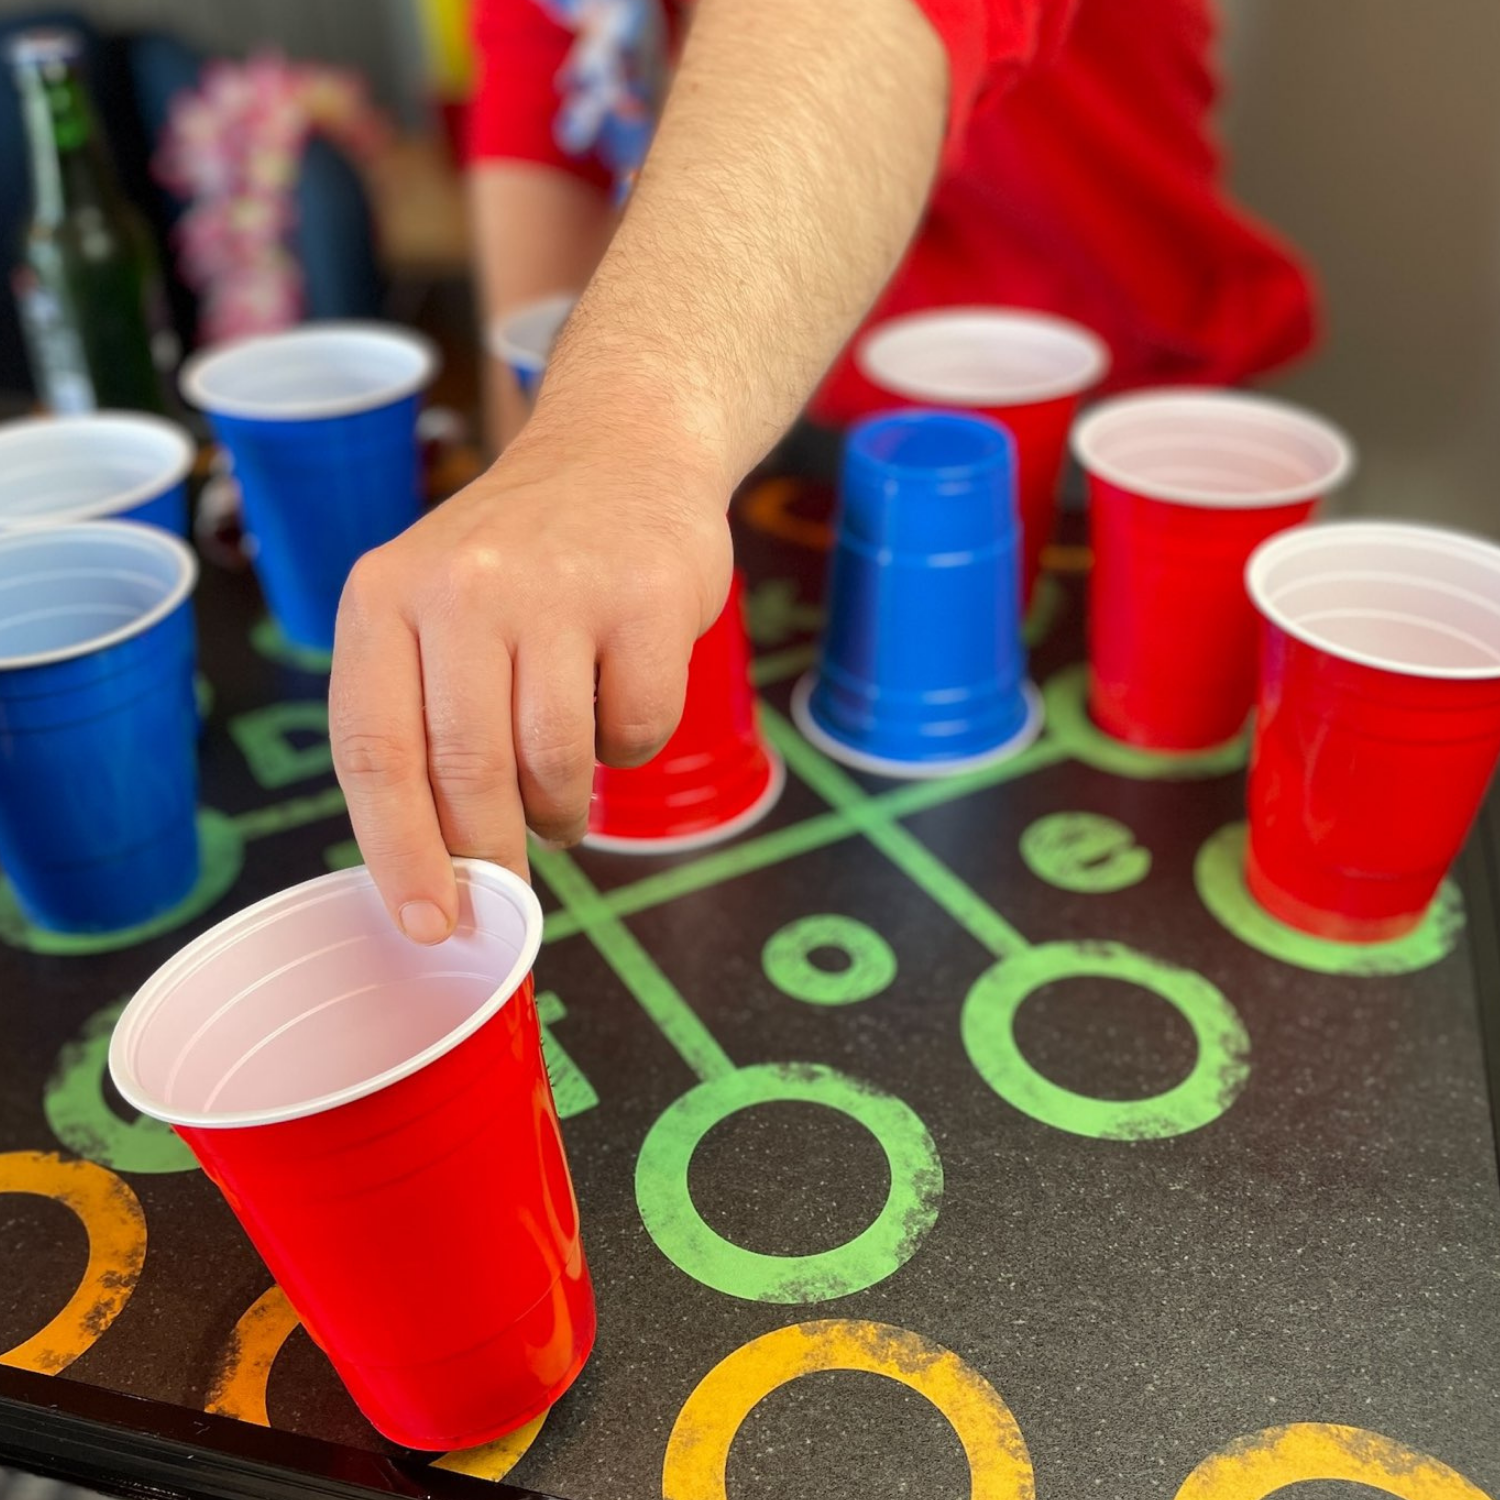 BEERBALLER® Multigame Beer Pong Tisch - 6 Partyspiele auf einem Bier-Pong  Tisch, Schwarzes Gestell, klappbar & Kratzfeste Oberfläche, Ballhalter  inkl 6 Bälle, Bierpong Tische